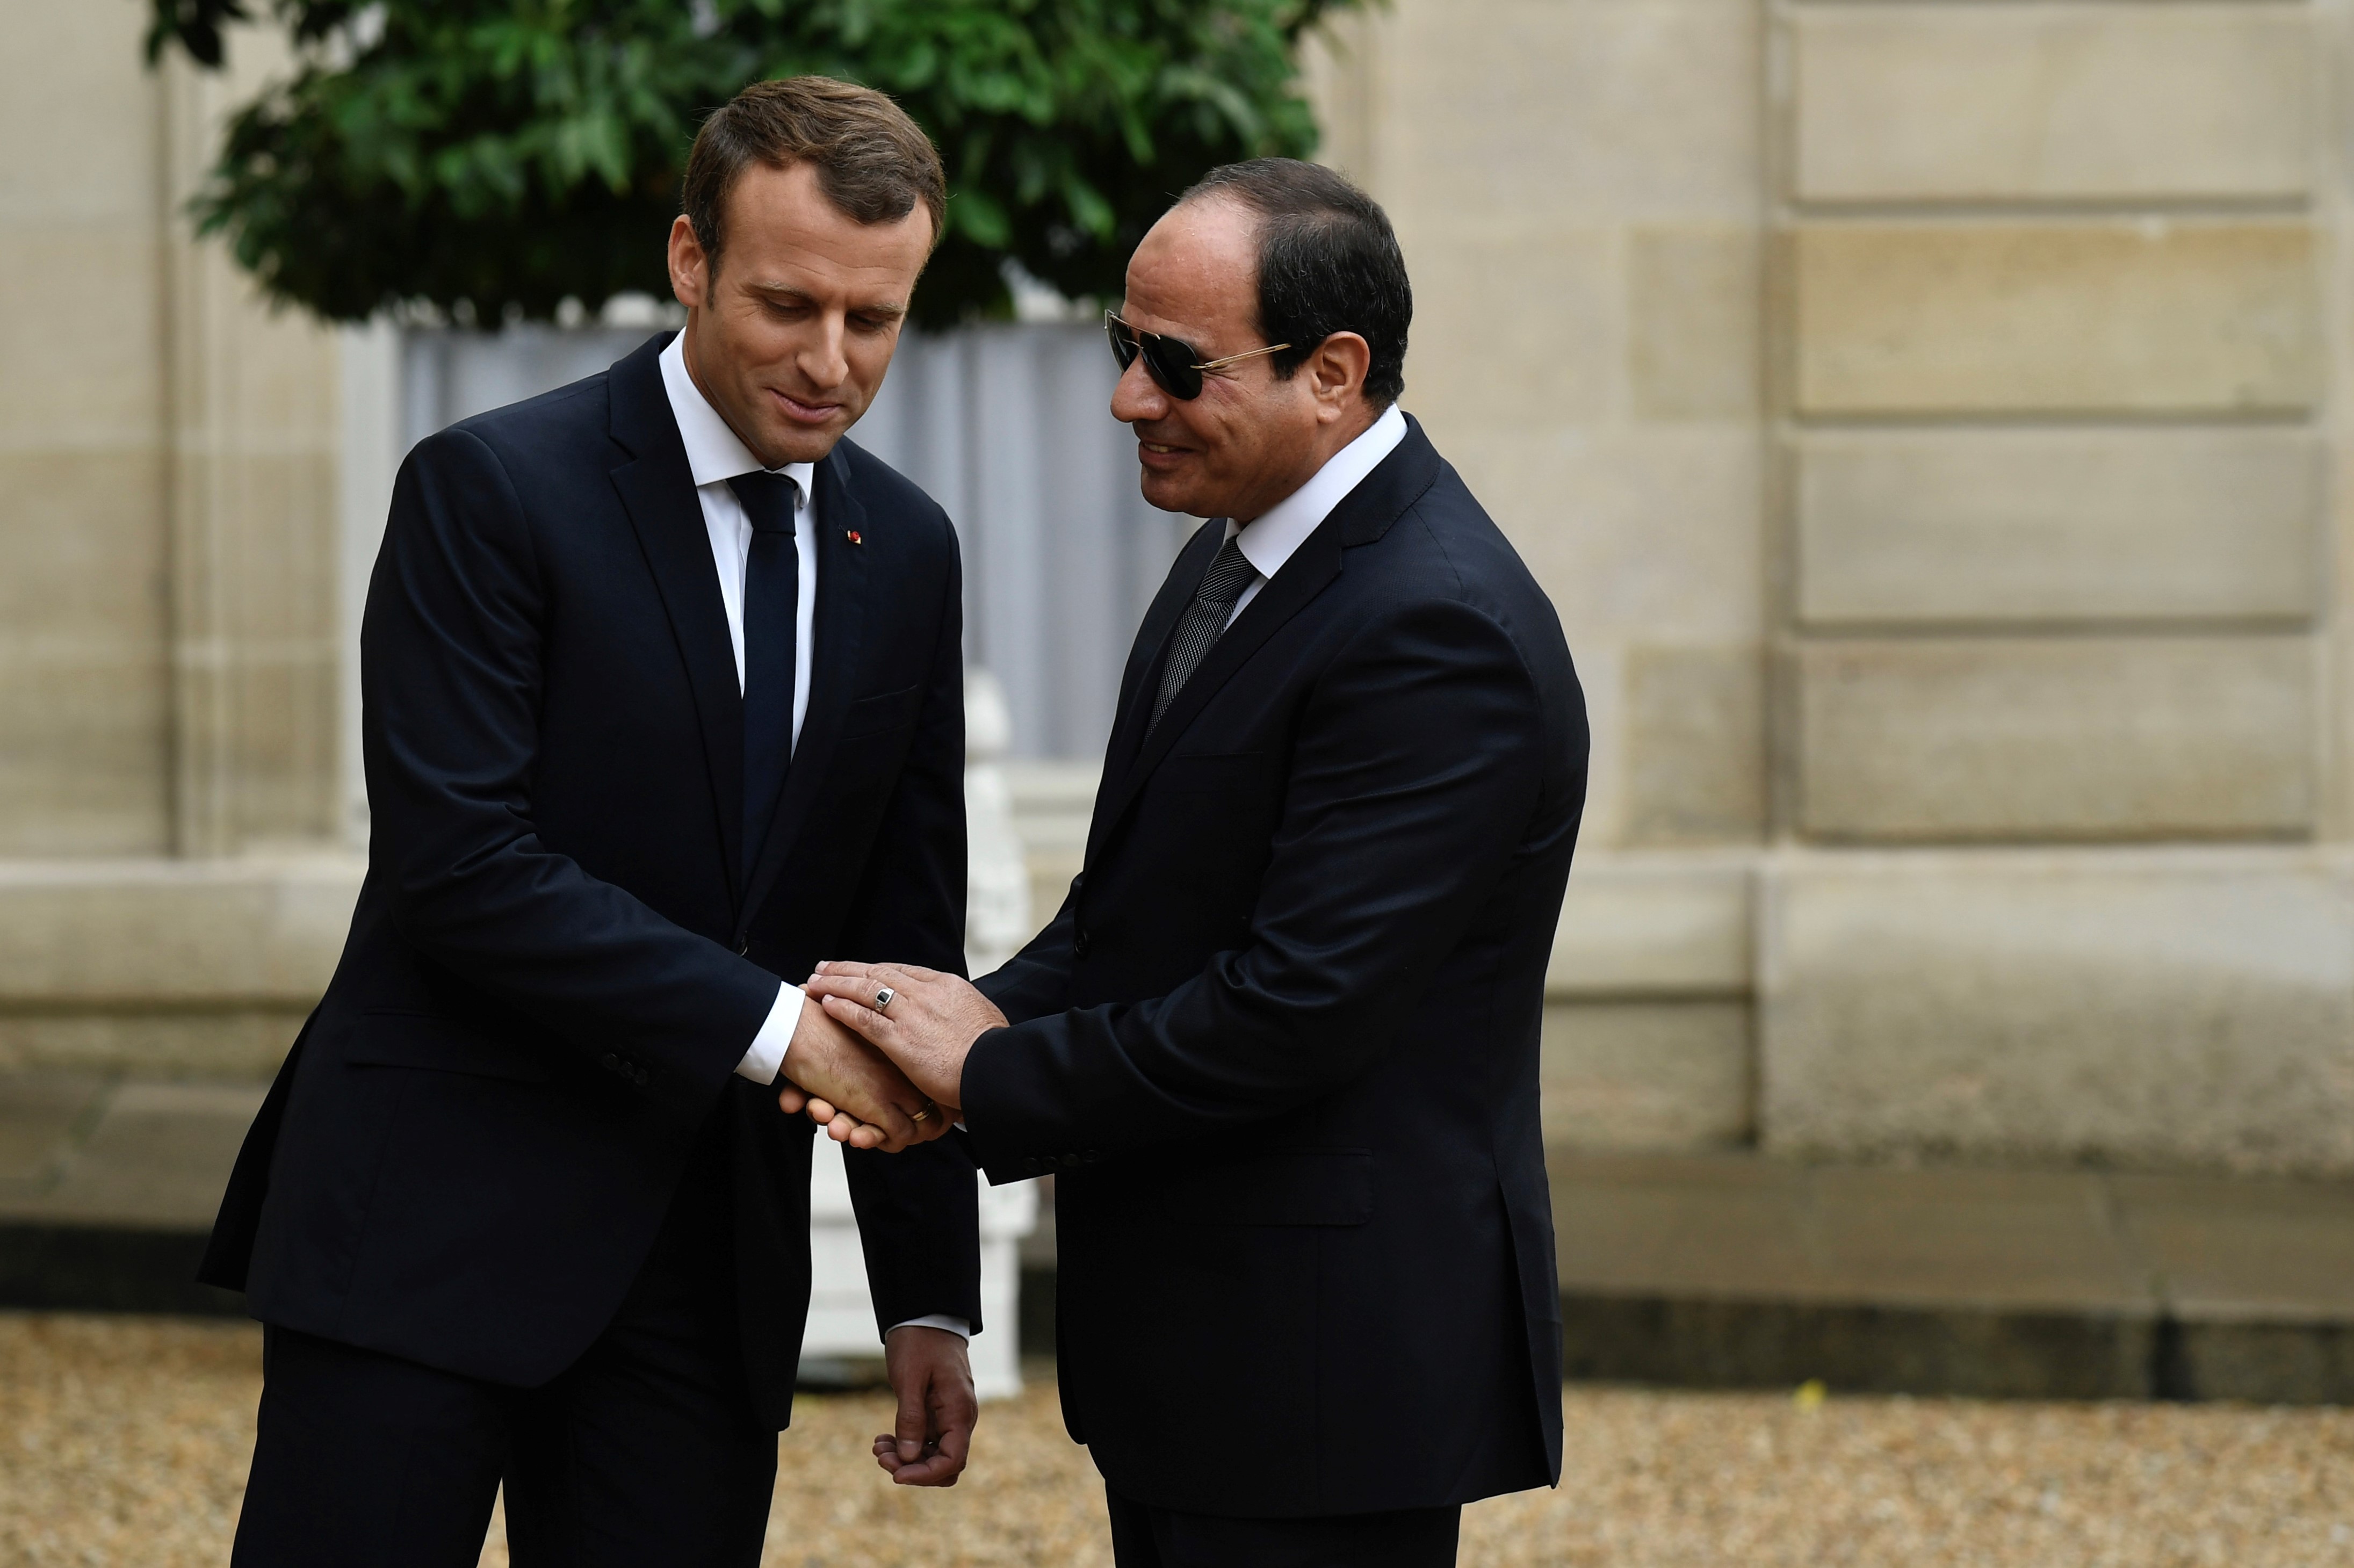 Le président français Emmanuel Macron (à gauche) serre la main du président égyptien Abdel Fattah al-Sissi à son arrivée à l’Élysée, à Paris le 24 octobre 2017 (AFP)